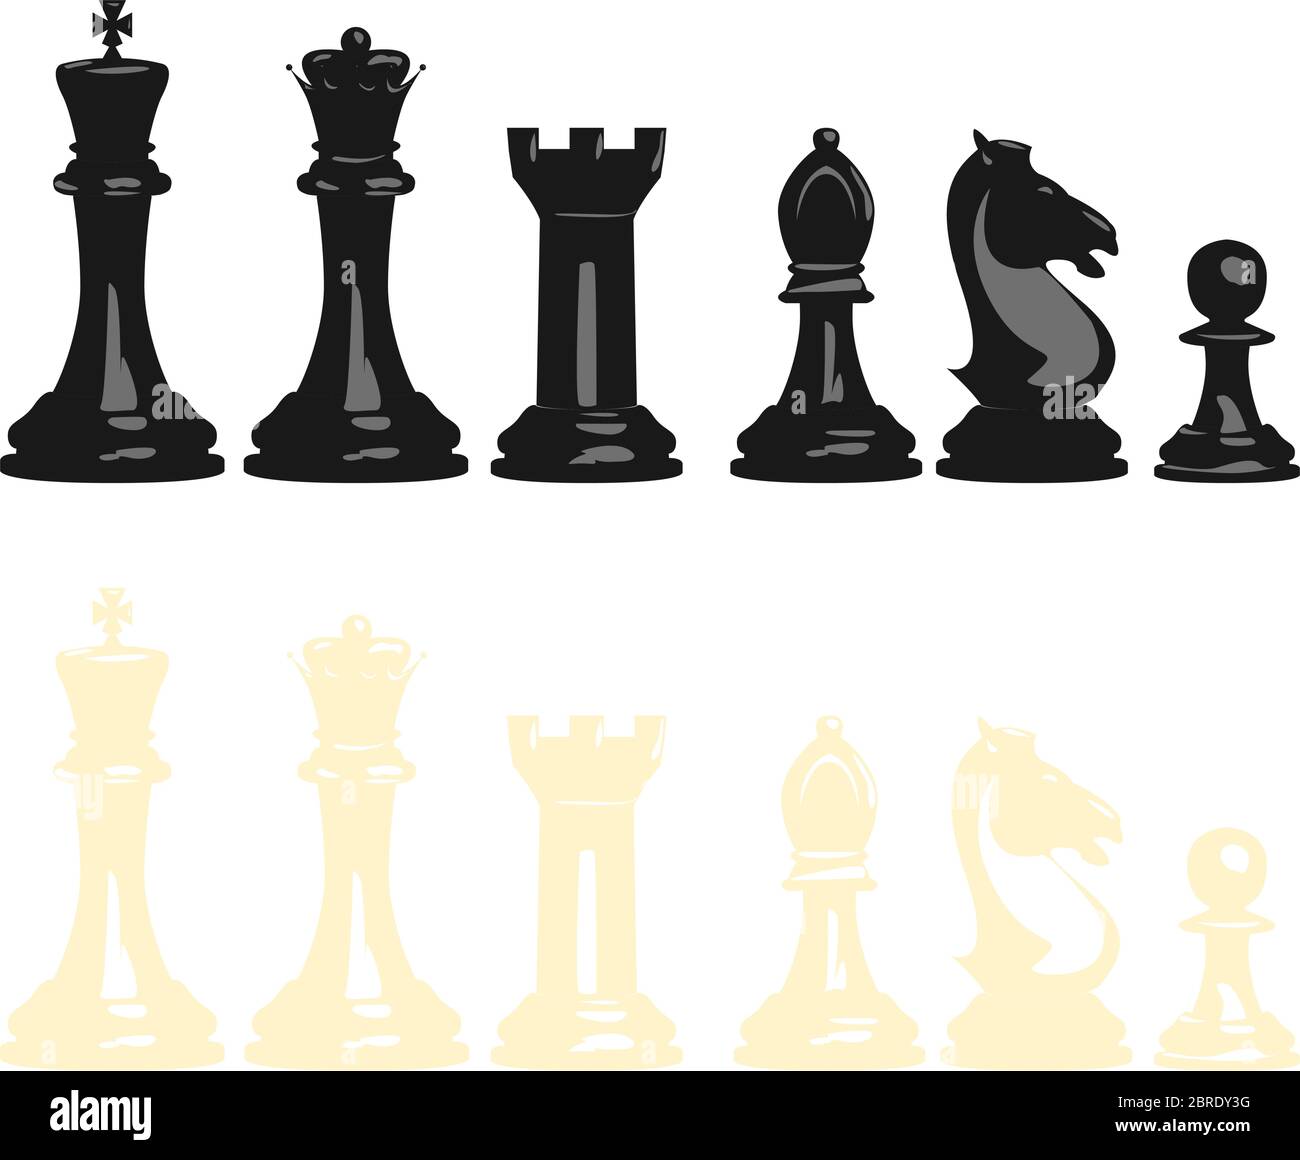 Ensemble d'illustrations vectorielles de pièces d'échecs, noirs et blancs, contient toutes les pièces: Roi, reine, tour, évêque, chevalier et pion. Illustration de Vecteur